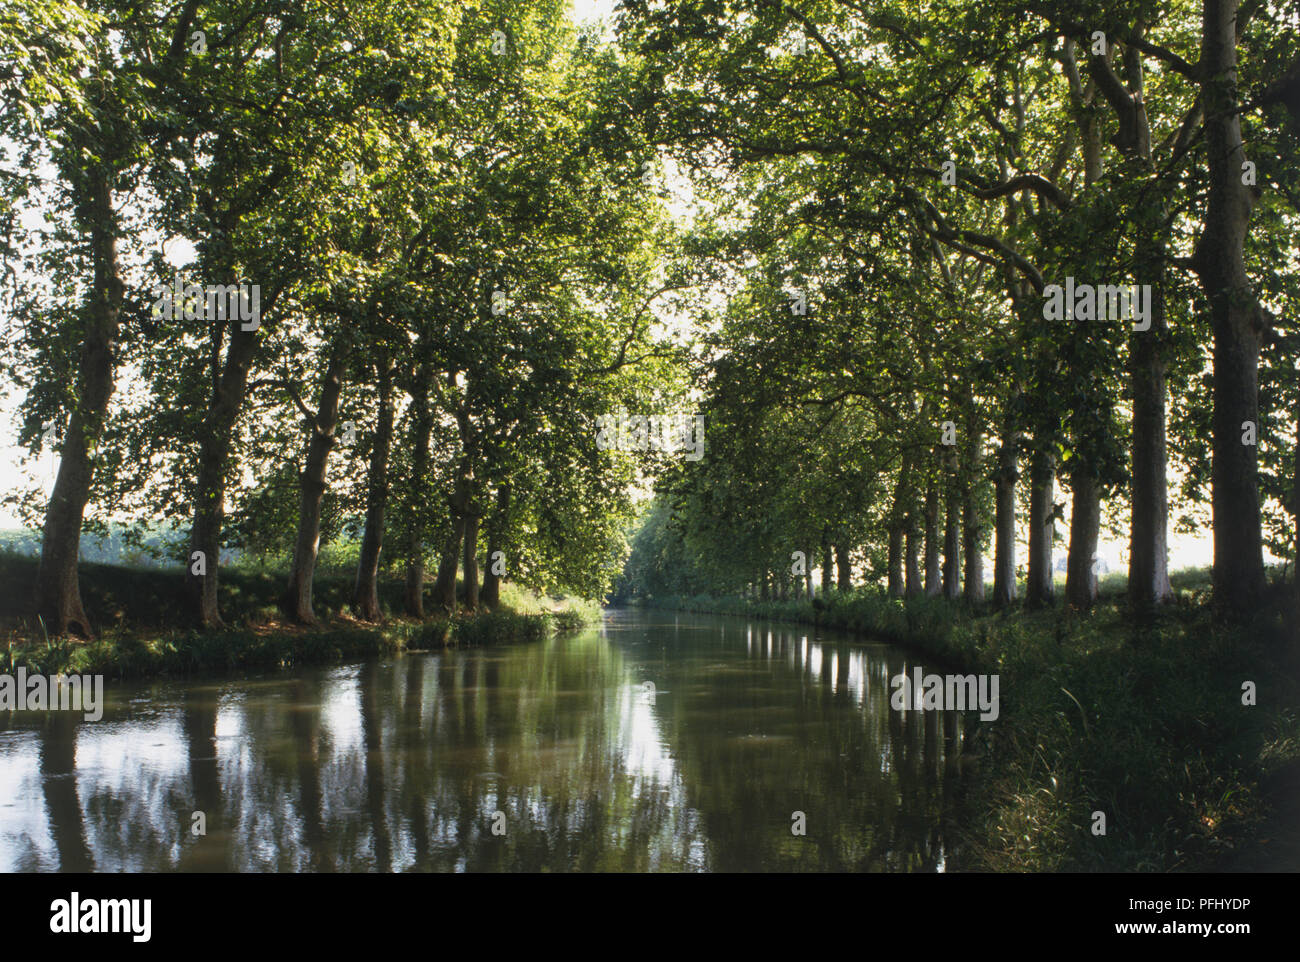 Frankreich, Canal du Midi in der Nähe von Colombieres, Fluss gesäumt mit Platanen. Stockfoto